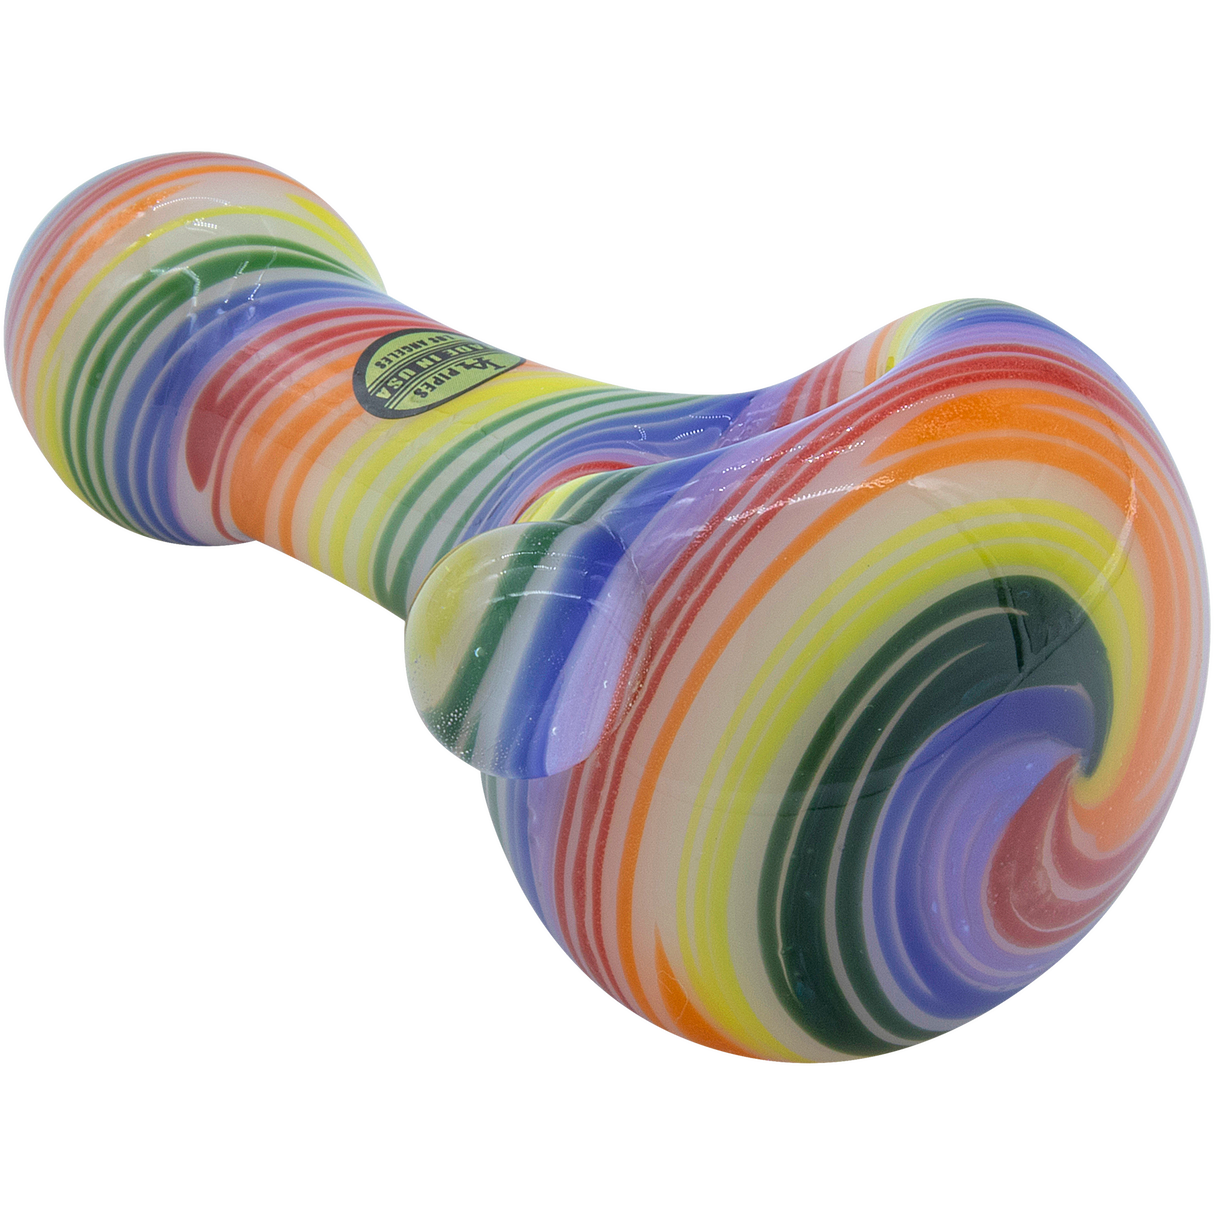 LA Pipes Rainbow Spirals Glass Pipe, 4.5" Spoon Design, Borosilicate, USA Made